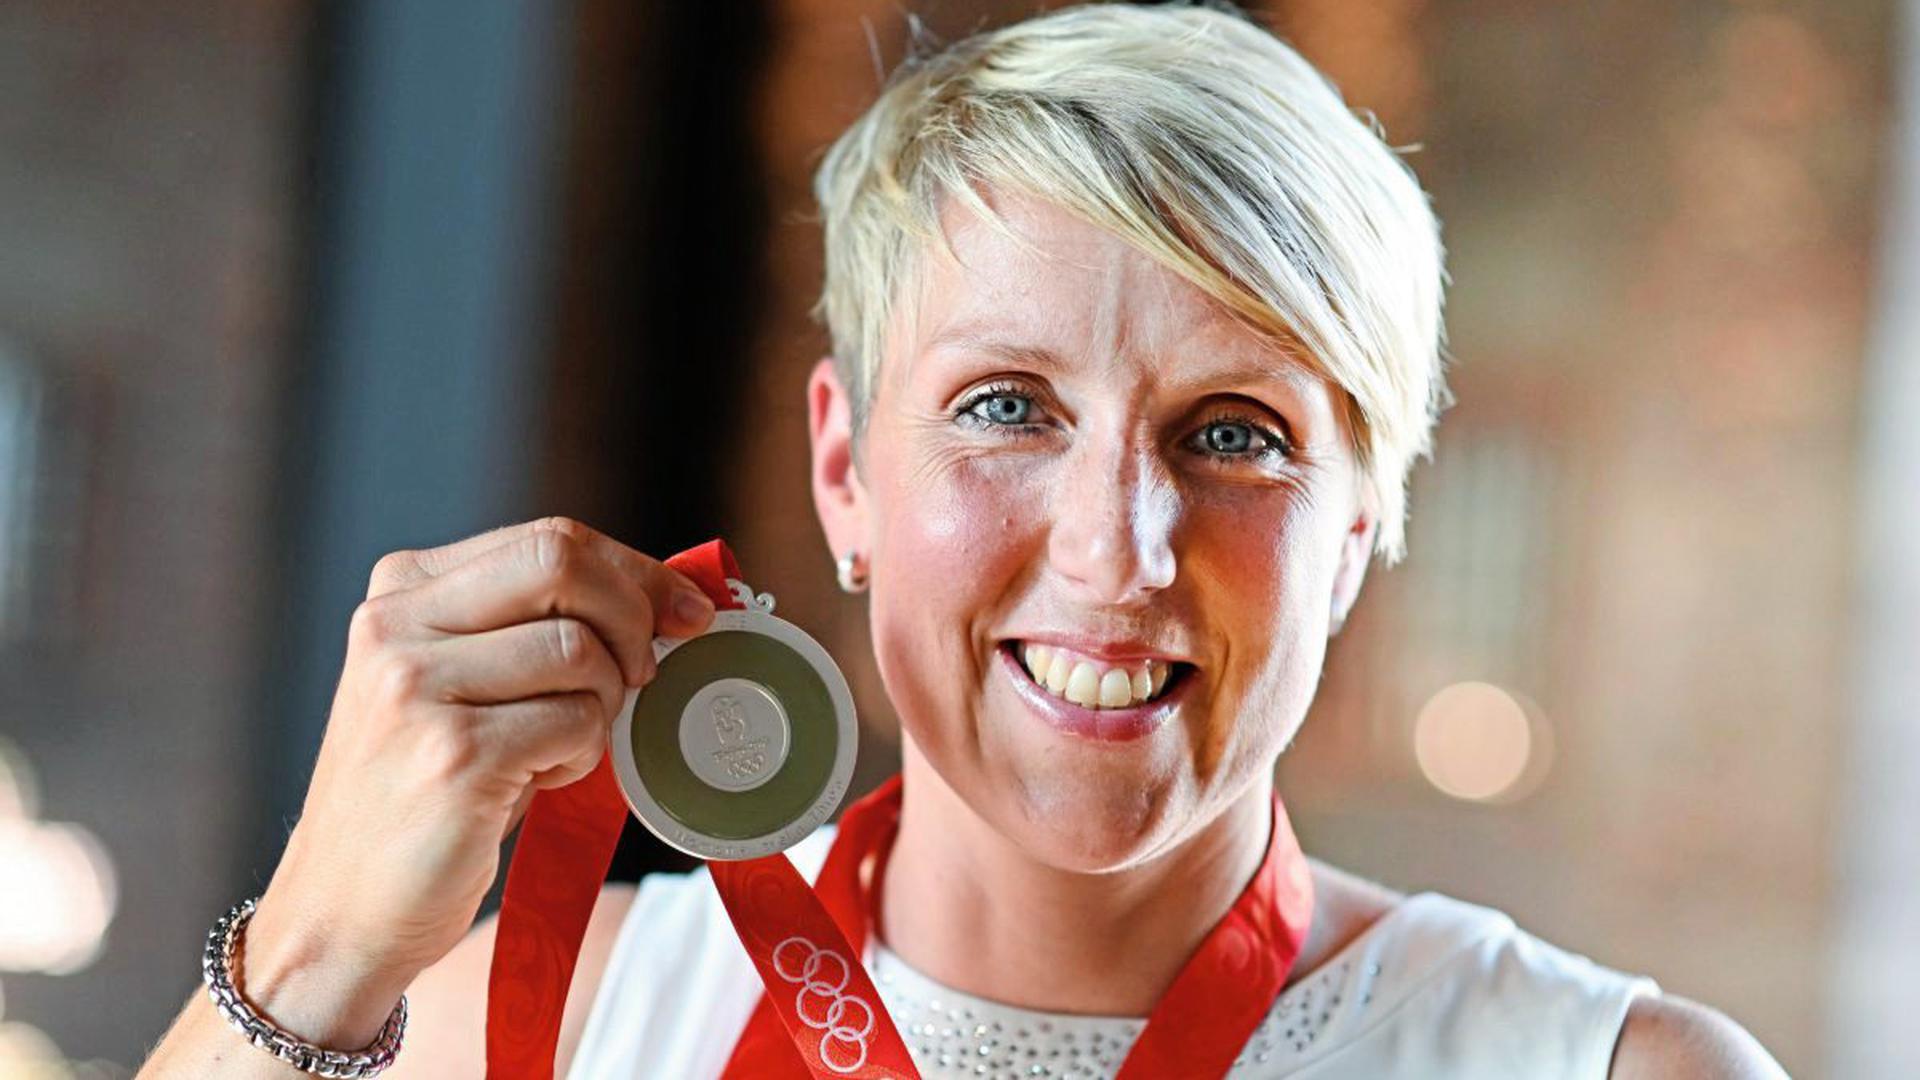 Christina Obergföll zeigt in Offenburg ihre Medaille. Elf Jahre nach den Olympischen Spielen in Peking hat die frühere Speerwurf-Weltmeisterin Christina Obergföll ihre Silbermedaille bekommen.